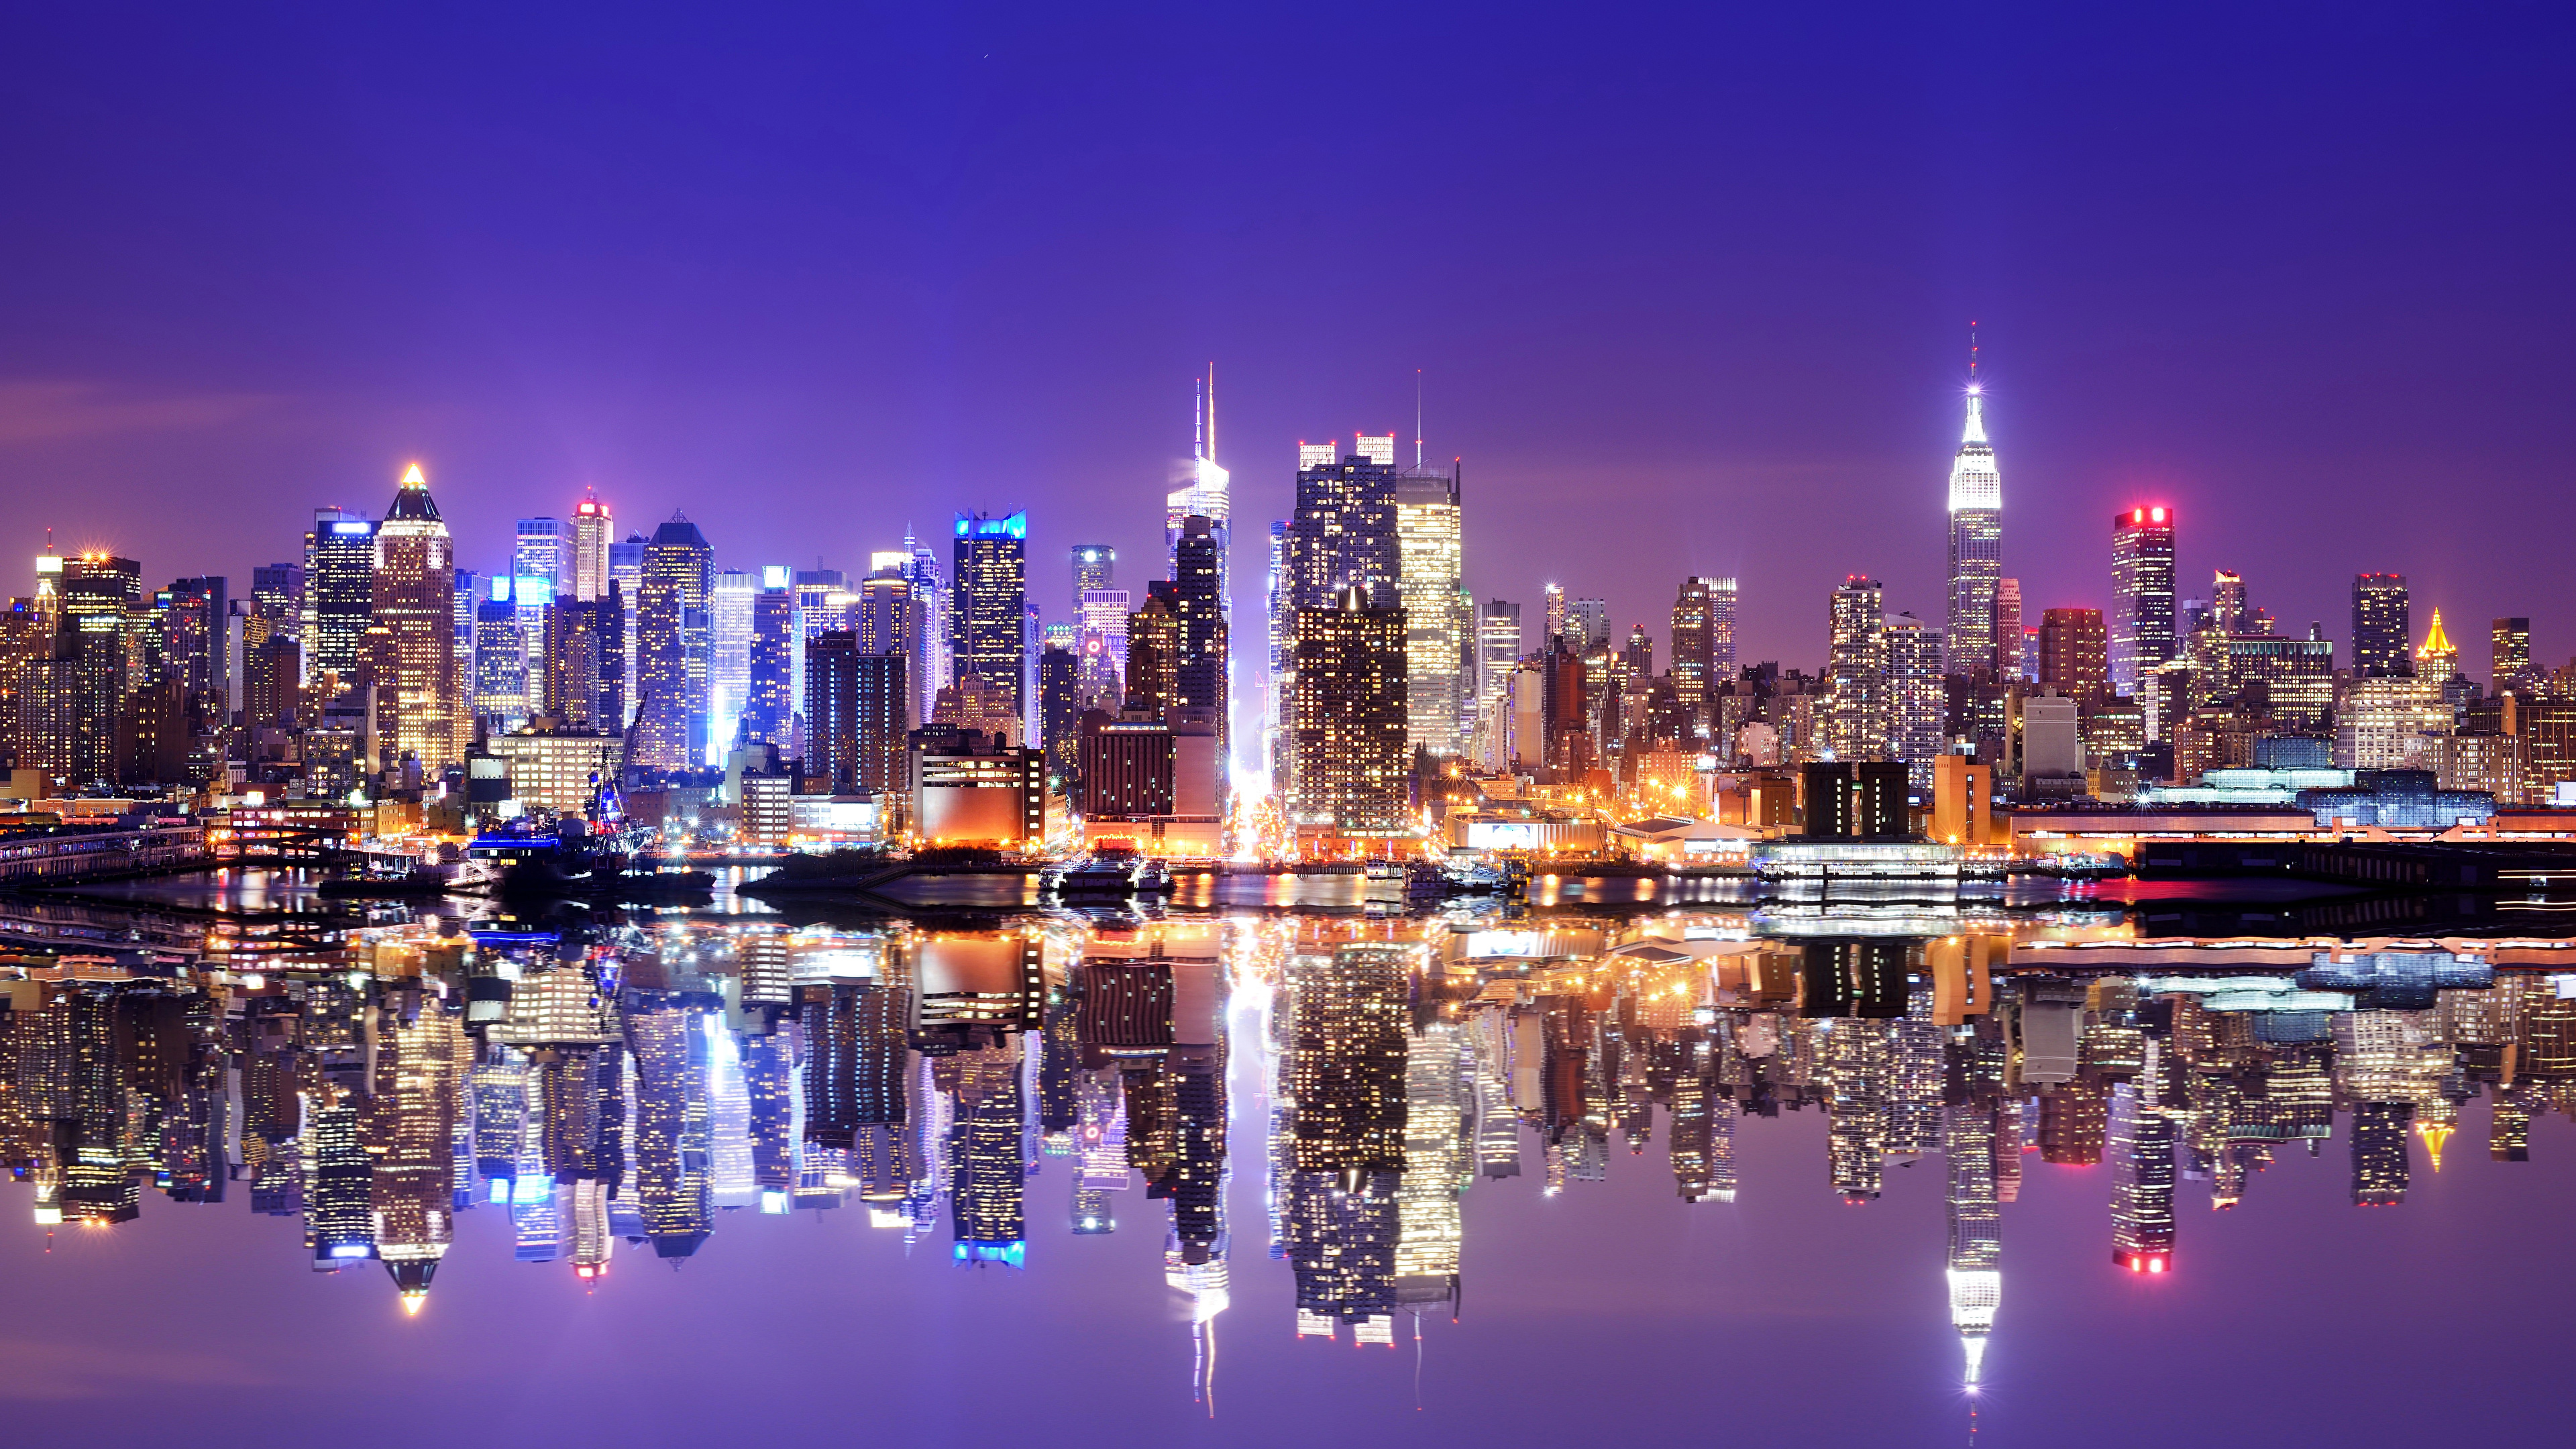 壁紙 3840x2160 アメリカ合衆国 超高層建築物 川 ニューヨーク 夜 マンハッタン 都市 ダウンロード 写真